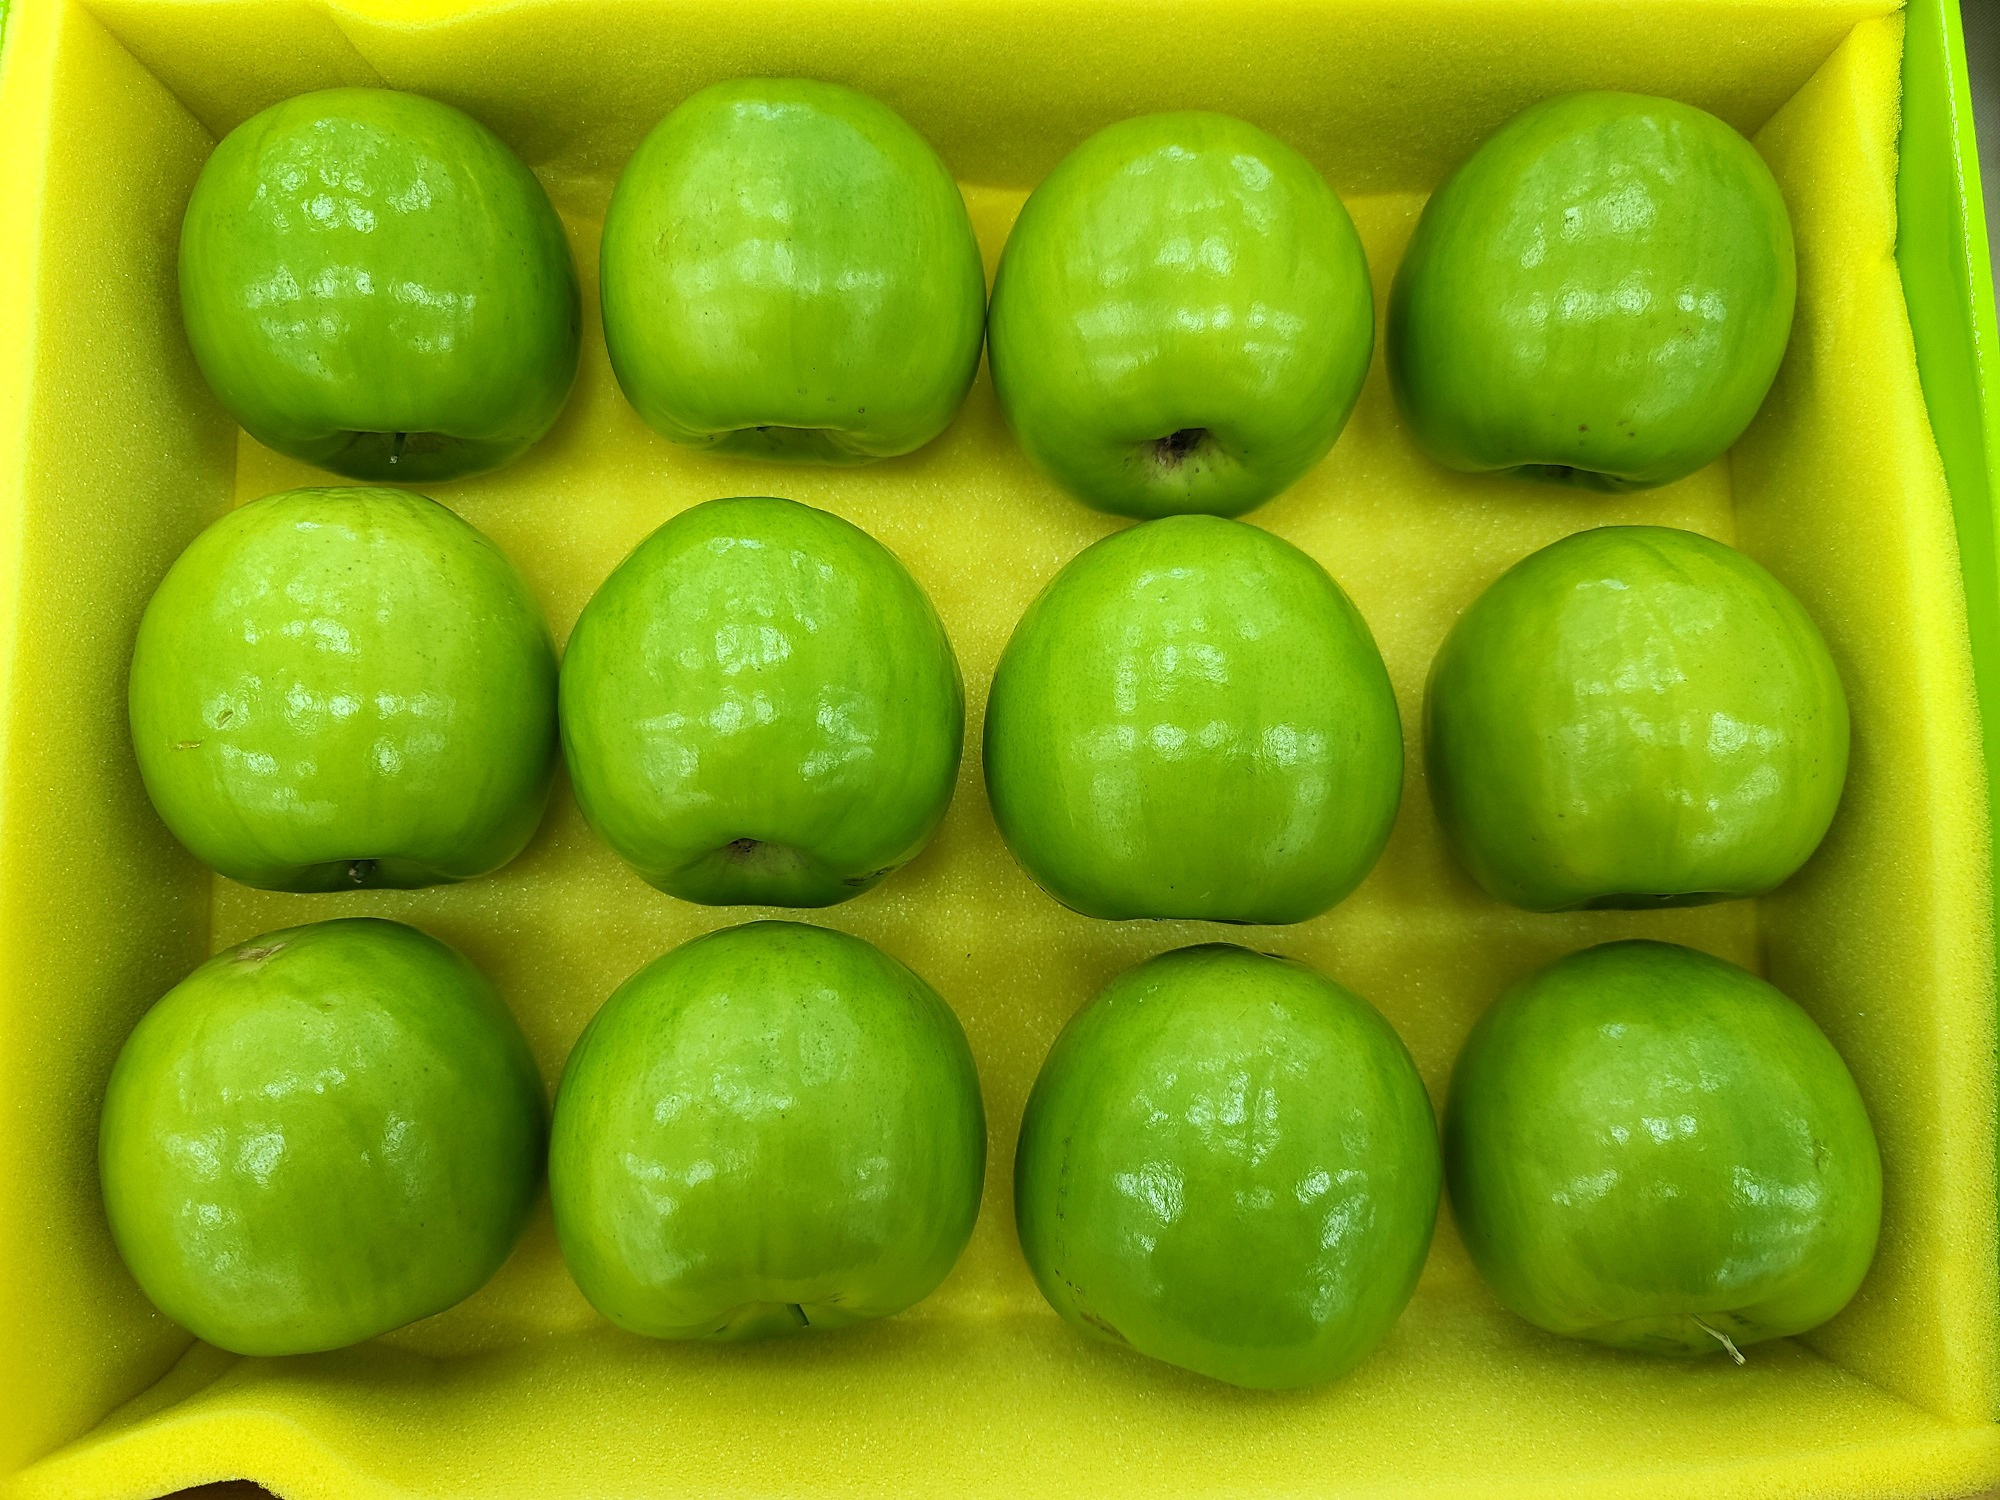 蘇信誠的冠軍蜜棗為高雄12號-珍愛，果型碩大、外觀翠綠